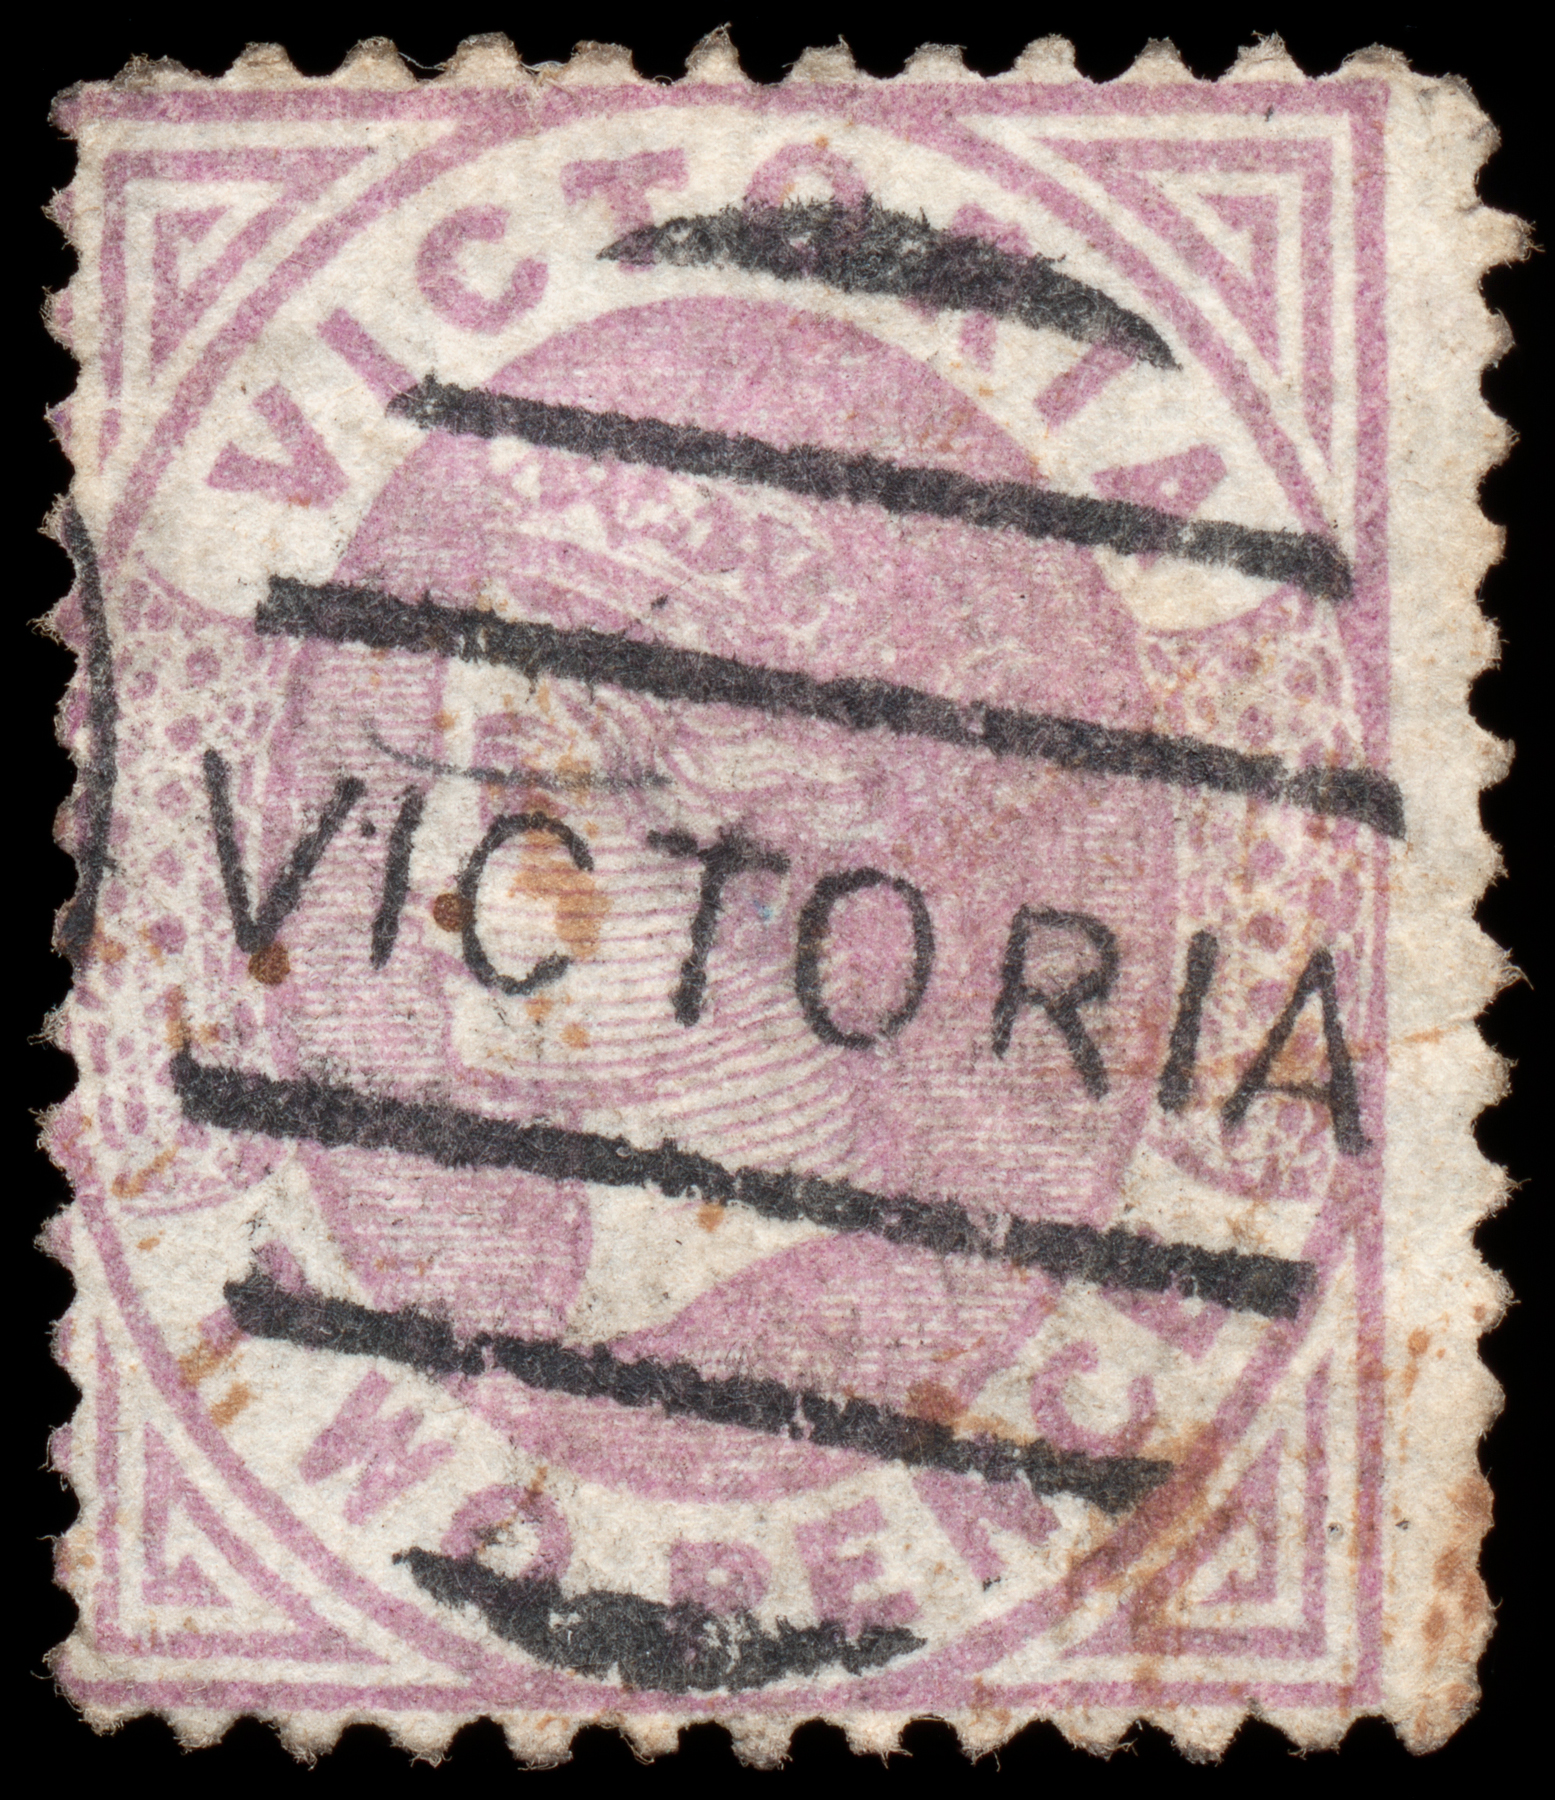 Violet queen victoria stamp photo